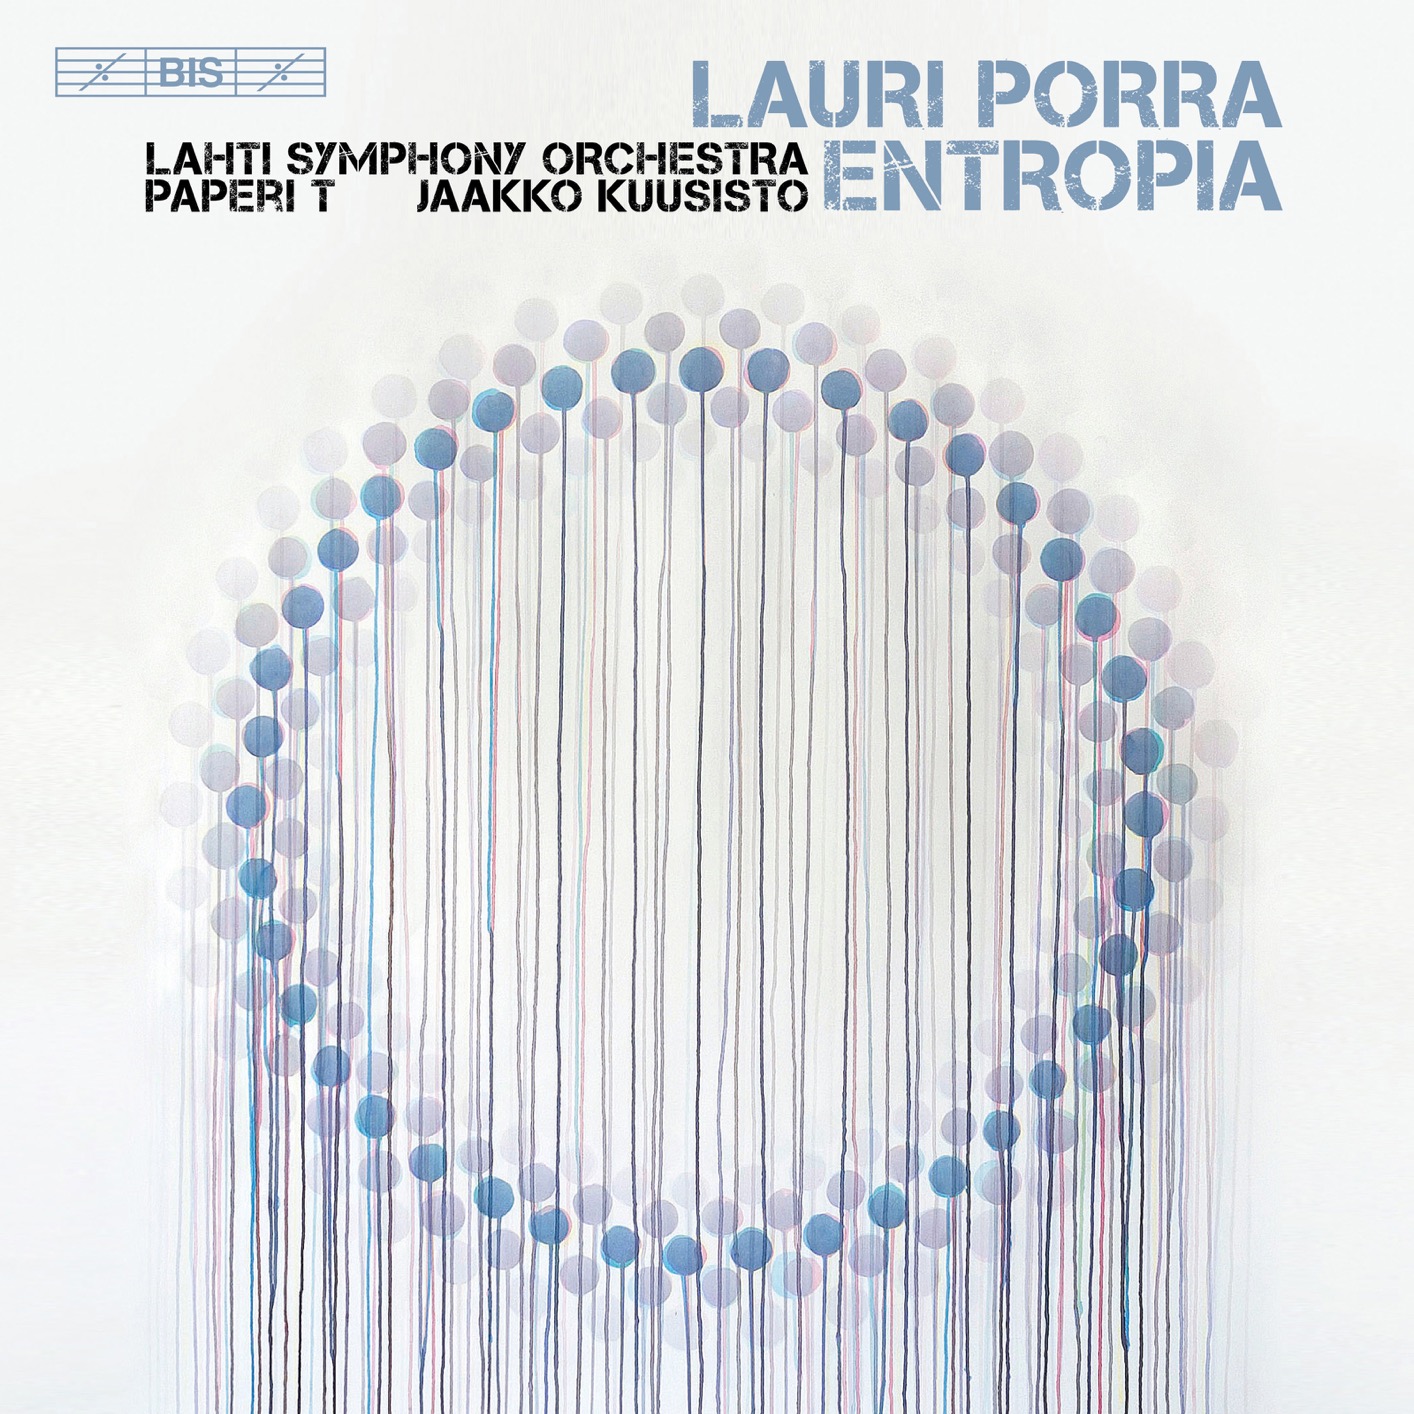 Lahti Symphony Orchestra & Jaakko Kuusisto - Lauri Porra: Entropia (2018) [FLAC 24bit/96kHz]